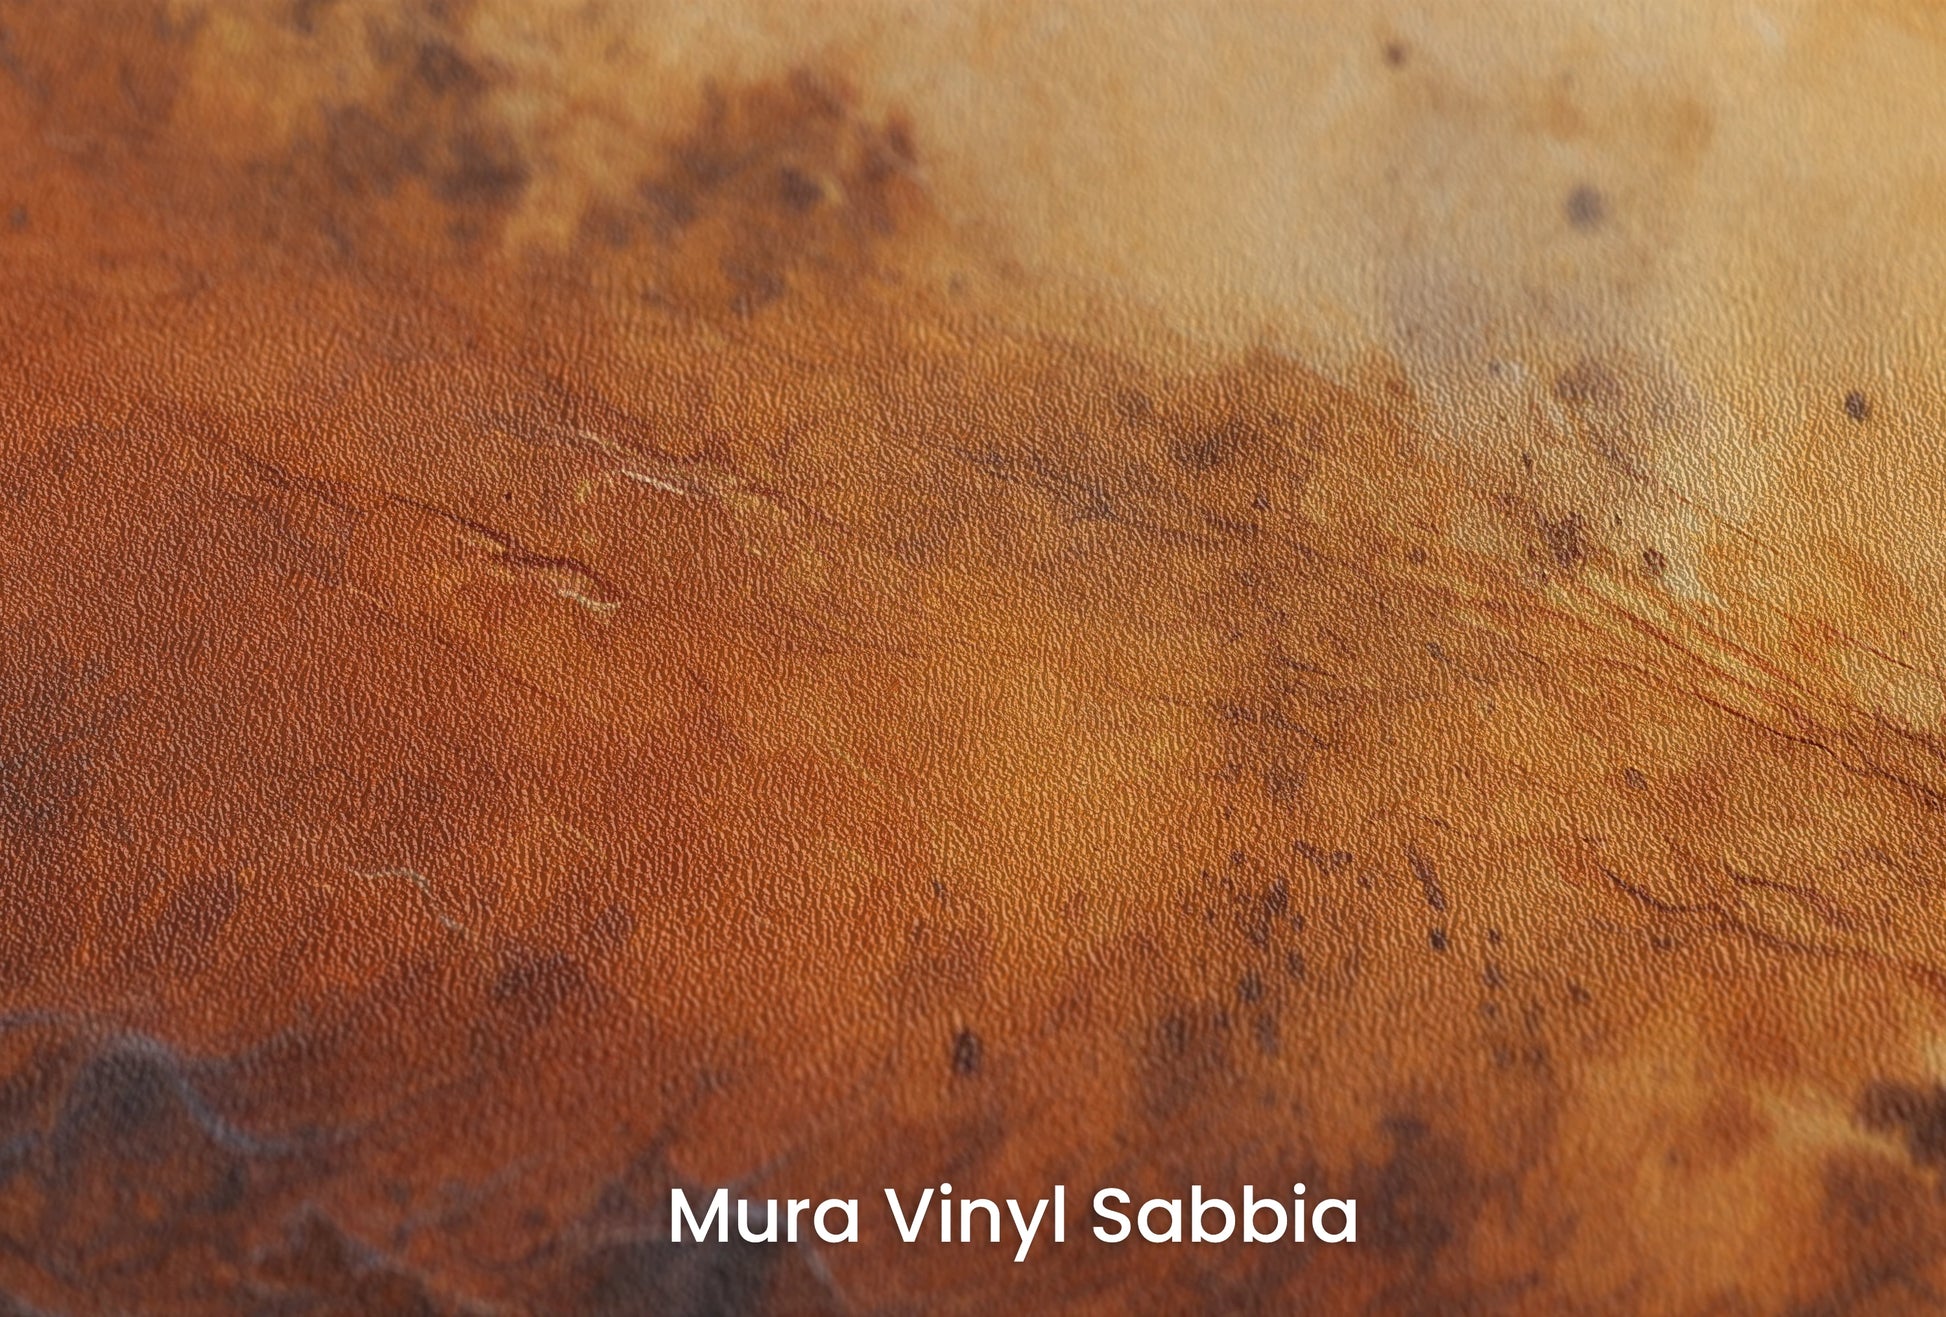 Zbliżenie na artystyczną fototapetę o nazwie Martian Winds na podłożu Mura Vinyl Sabbia struktura grubego ziarna piasku.